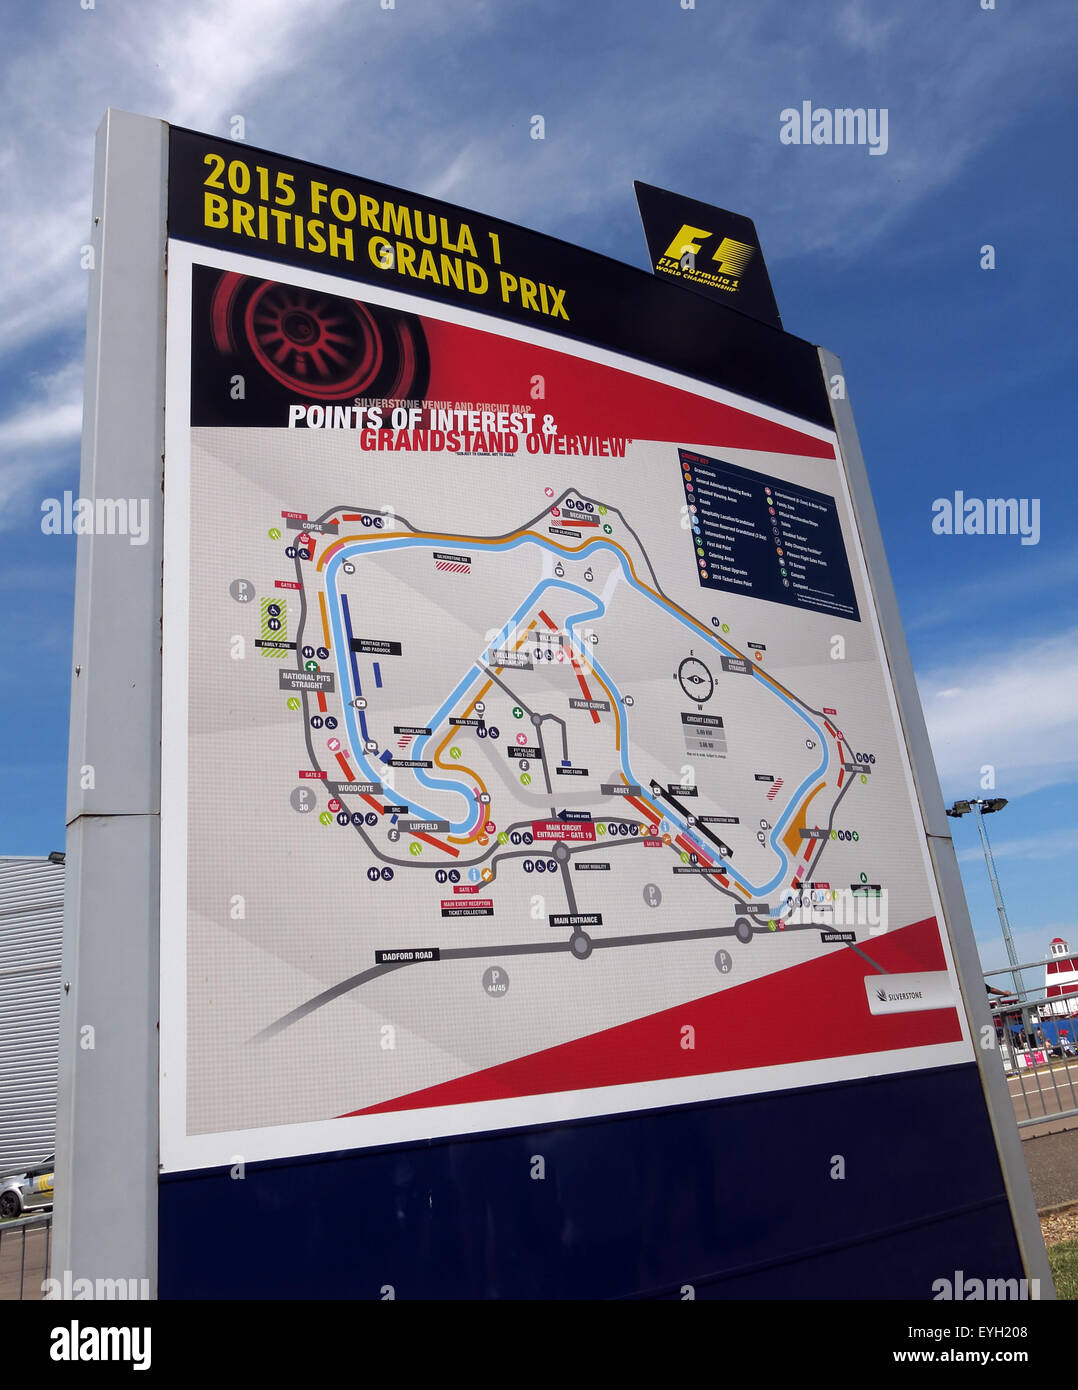 Silverstone F1 Grand Prix d'une carte du circuit, GP Angleterre Banque D'Images